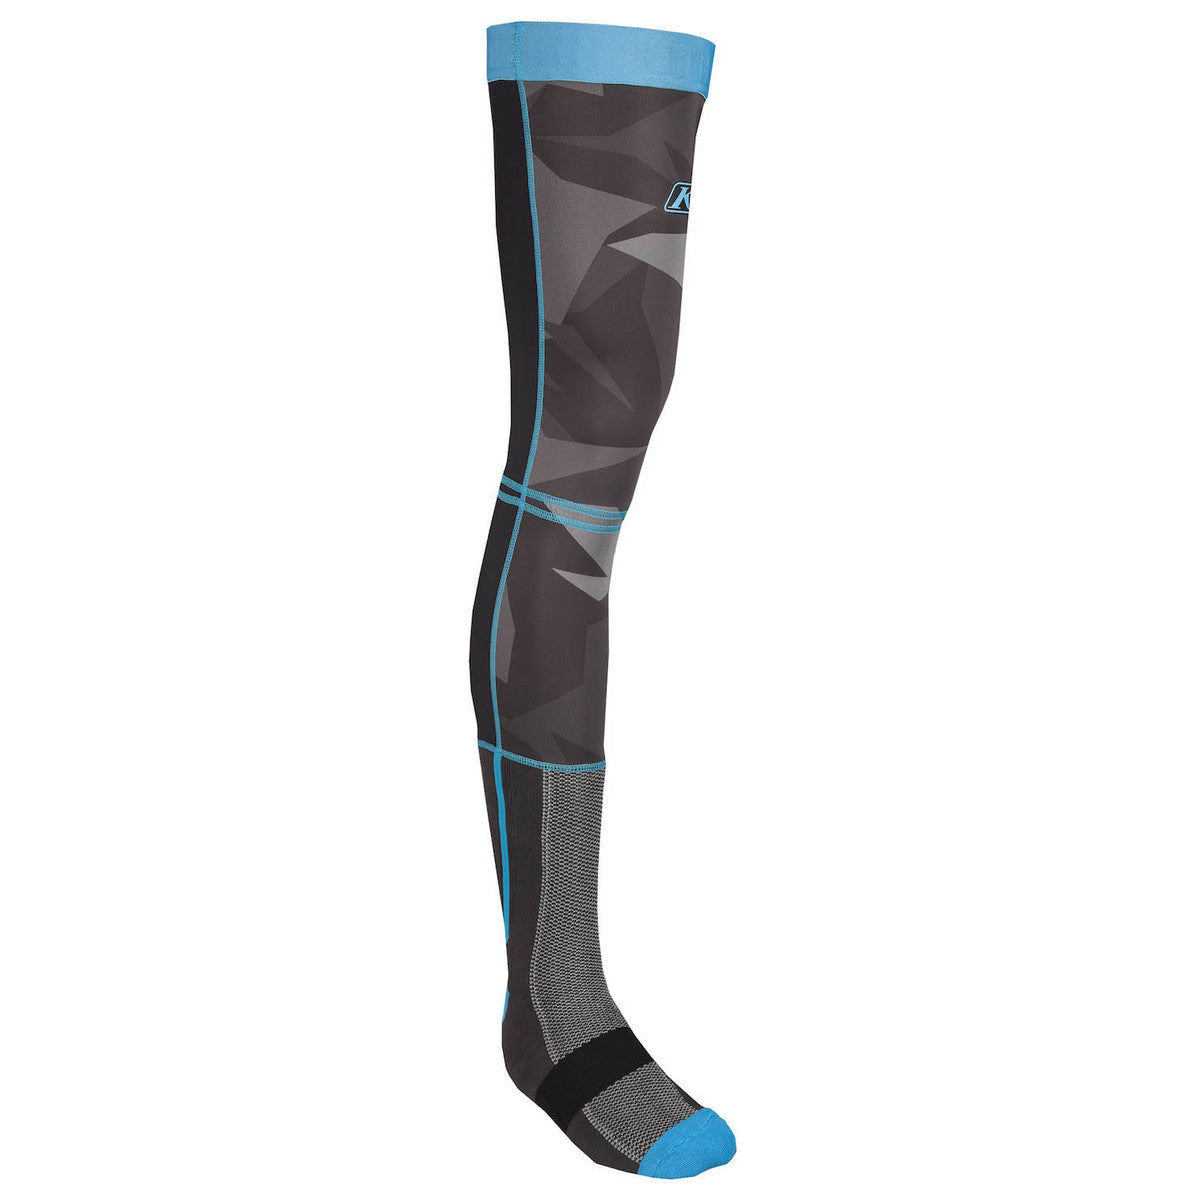 Klim Aggressor -1.0 Cooling Base Layer Knee Brace Sock